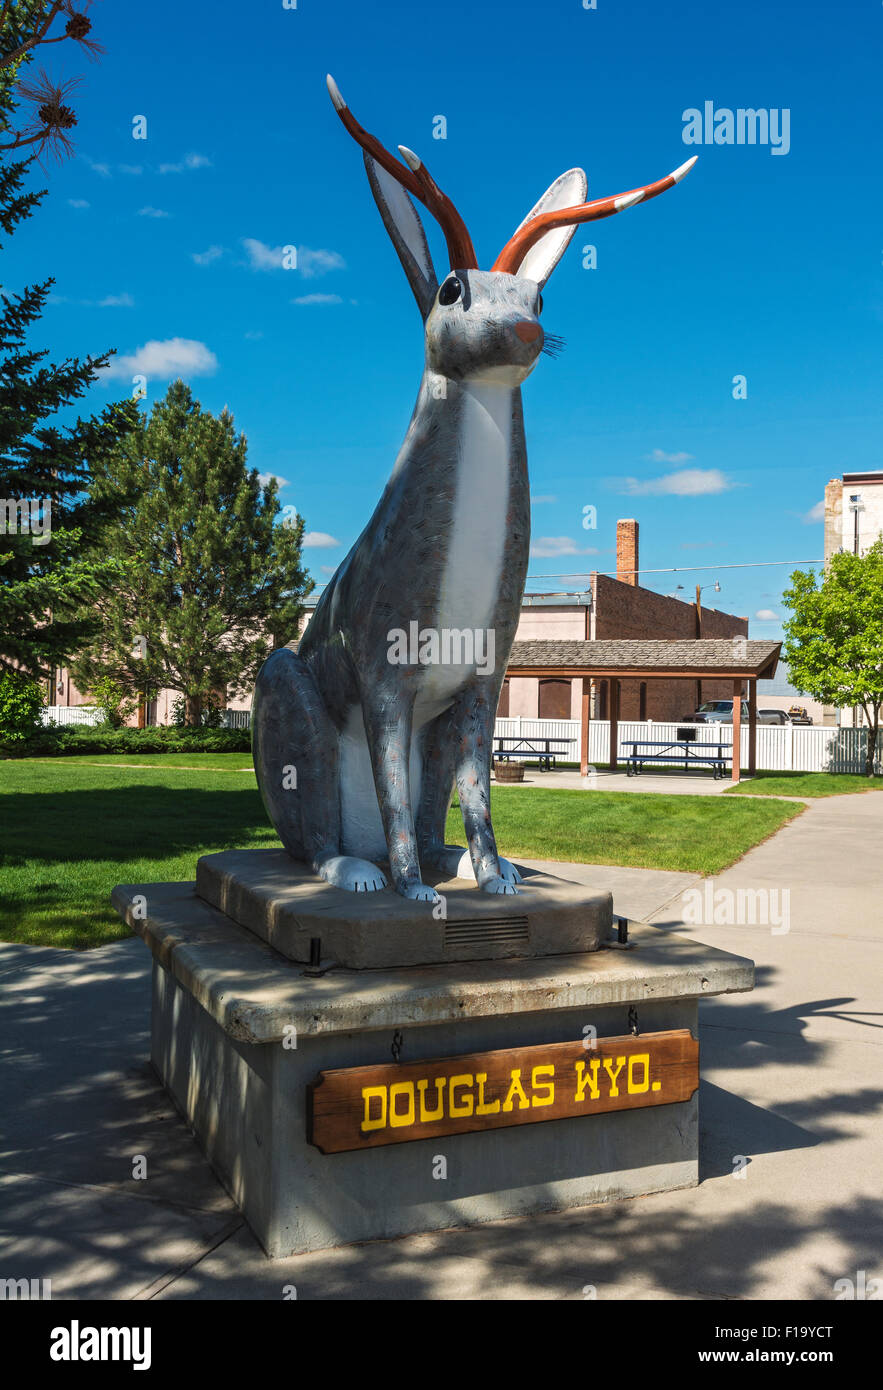 Le Wyoming, Douglas, Jackalope Statue, personnage de race croisée de jackrabbit et antilope Banque D'Images